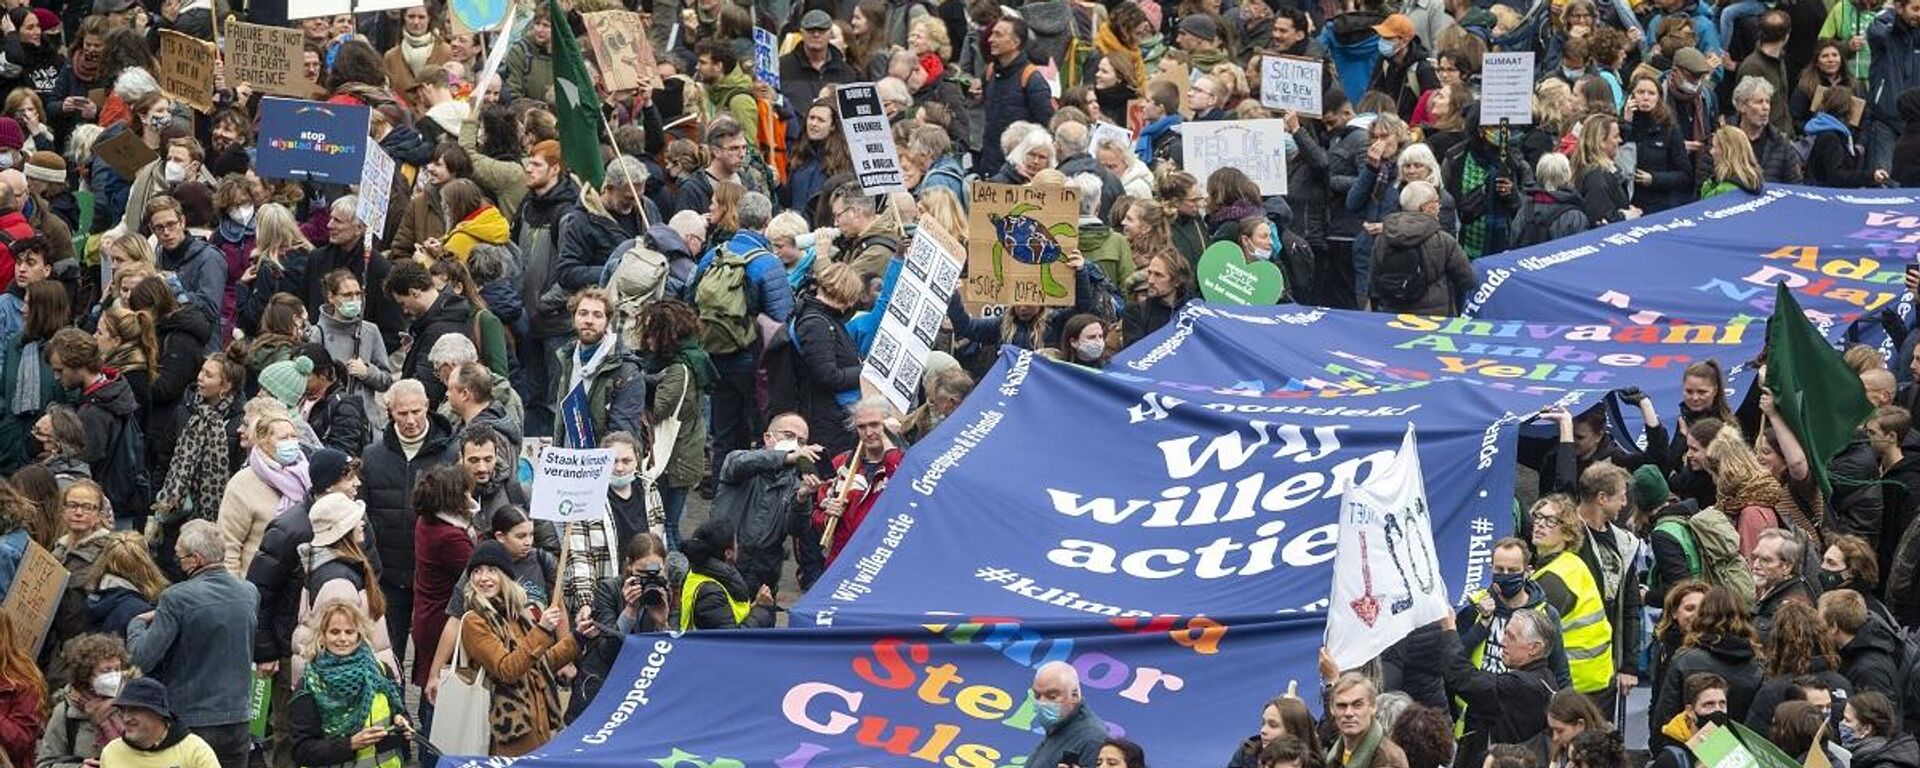 Hollanda'nın farklı kentlerinden yaklaşık 40 bin kişi, iklim politikalarını protesto etmek için başkent Amsterdam'da toplandı. - Sputnik Türkiye, 1920, 06.11.2021